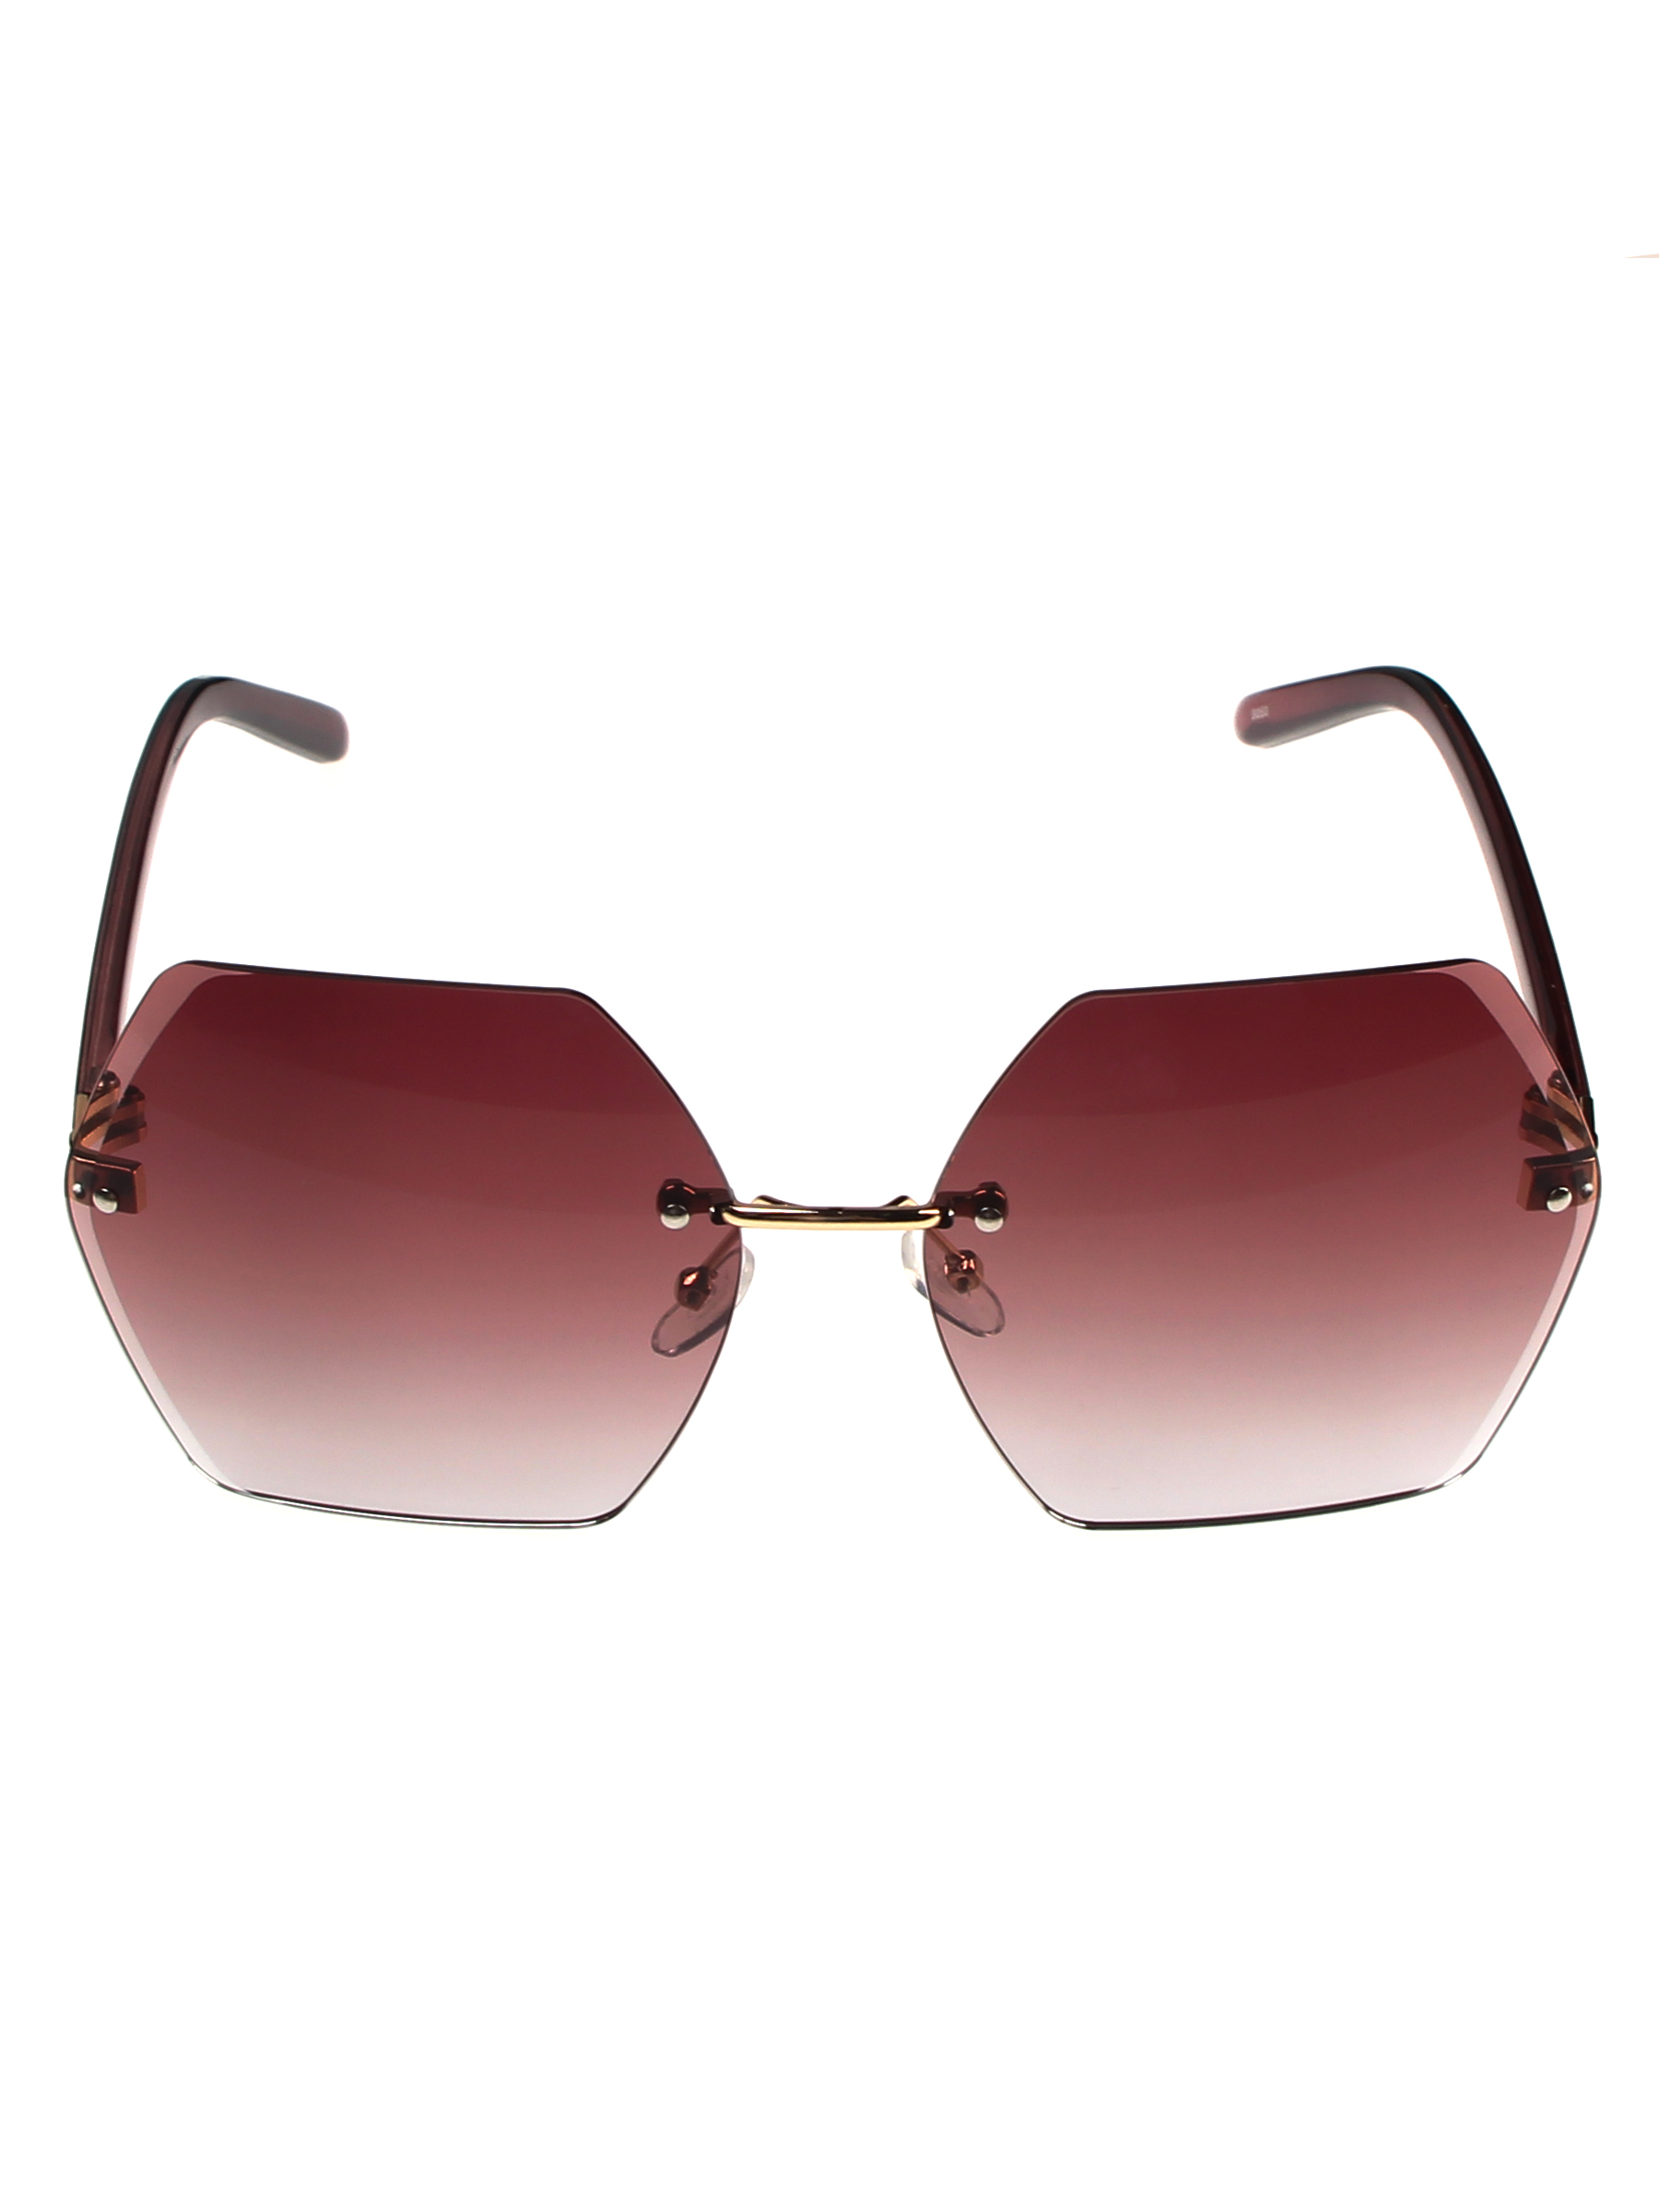 фото Солнцезащитные очки женские pretty mania mdp032 бордово-коричневый